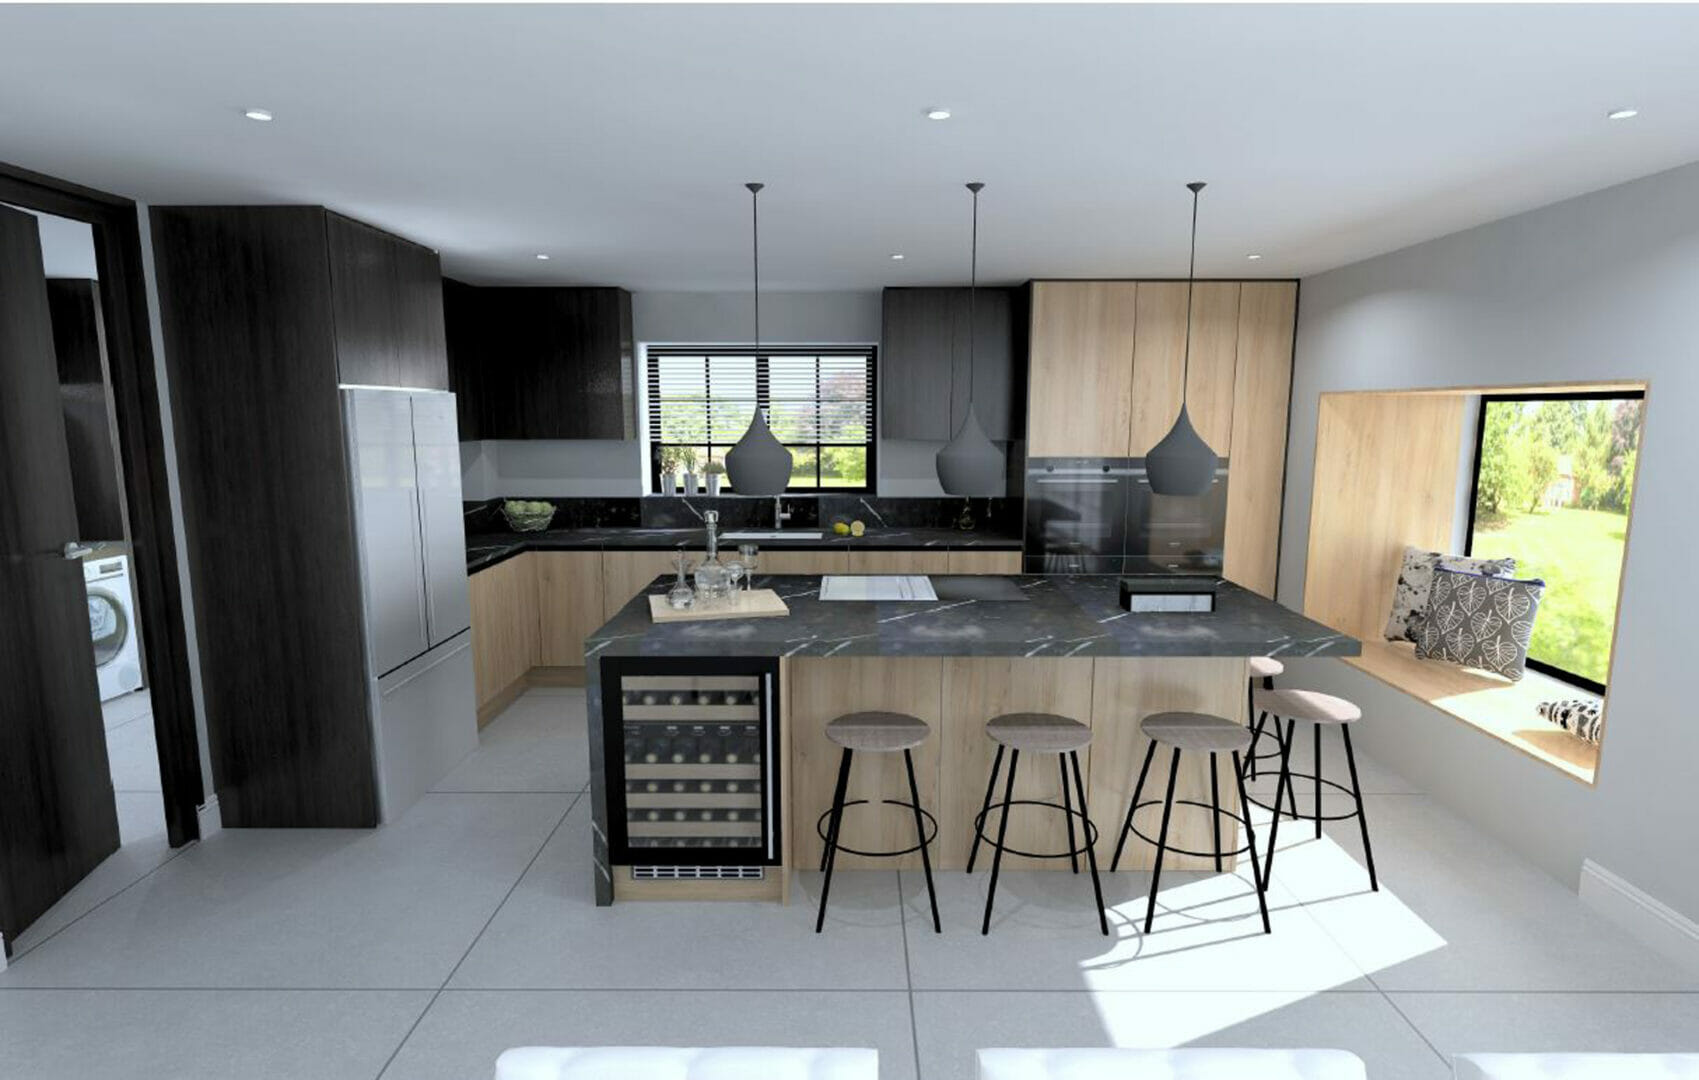 Brandt Design – What to consider when planning a kitchen